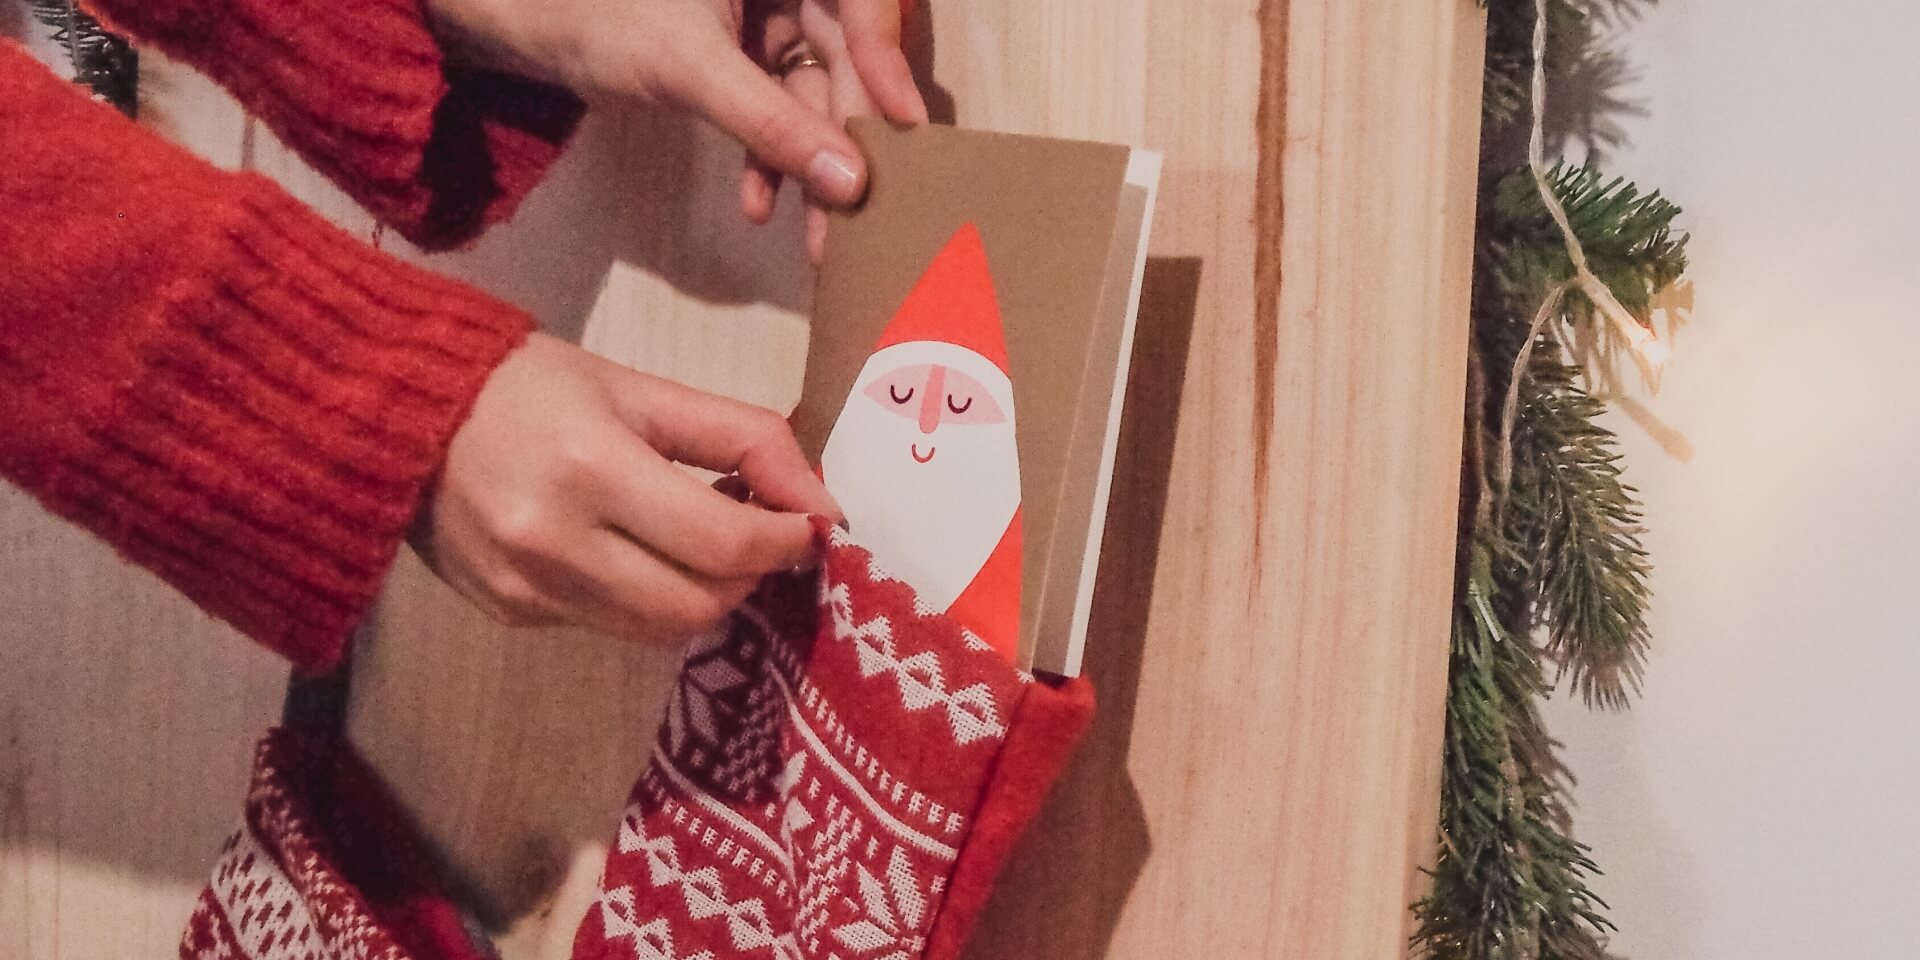 Hanging a stocking